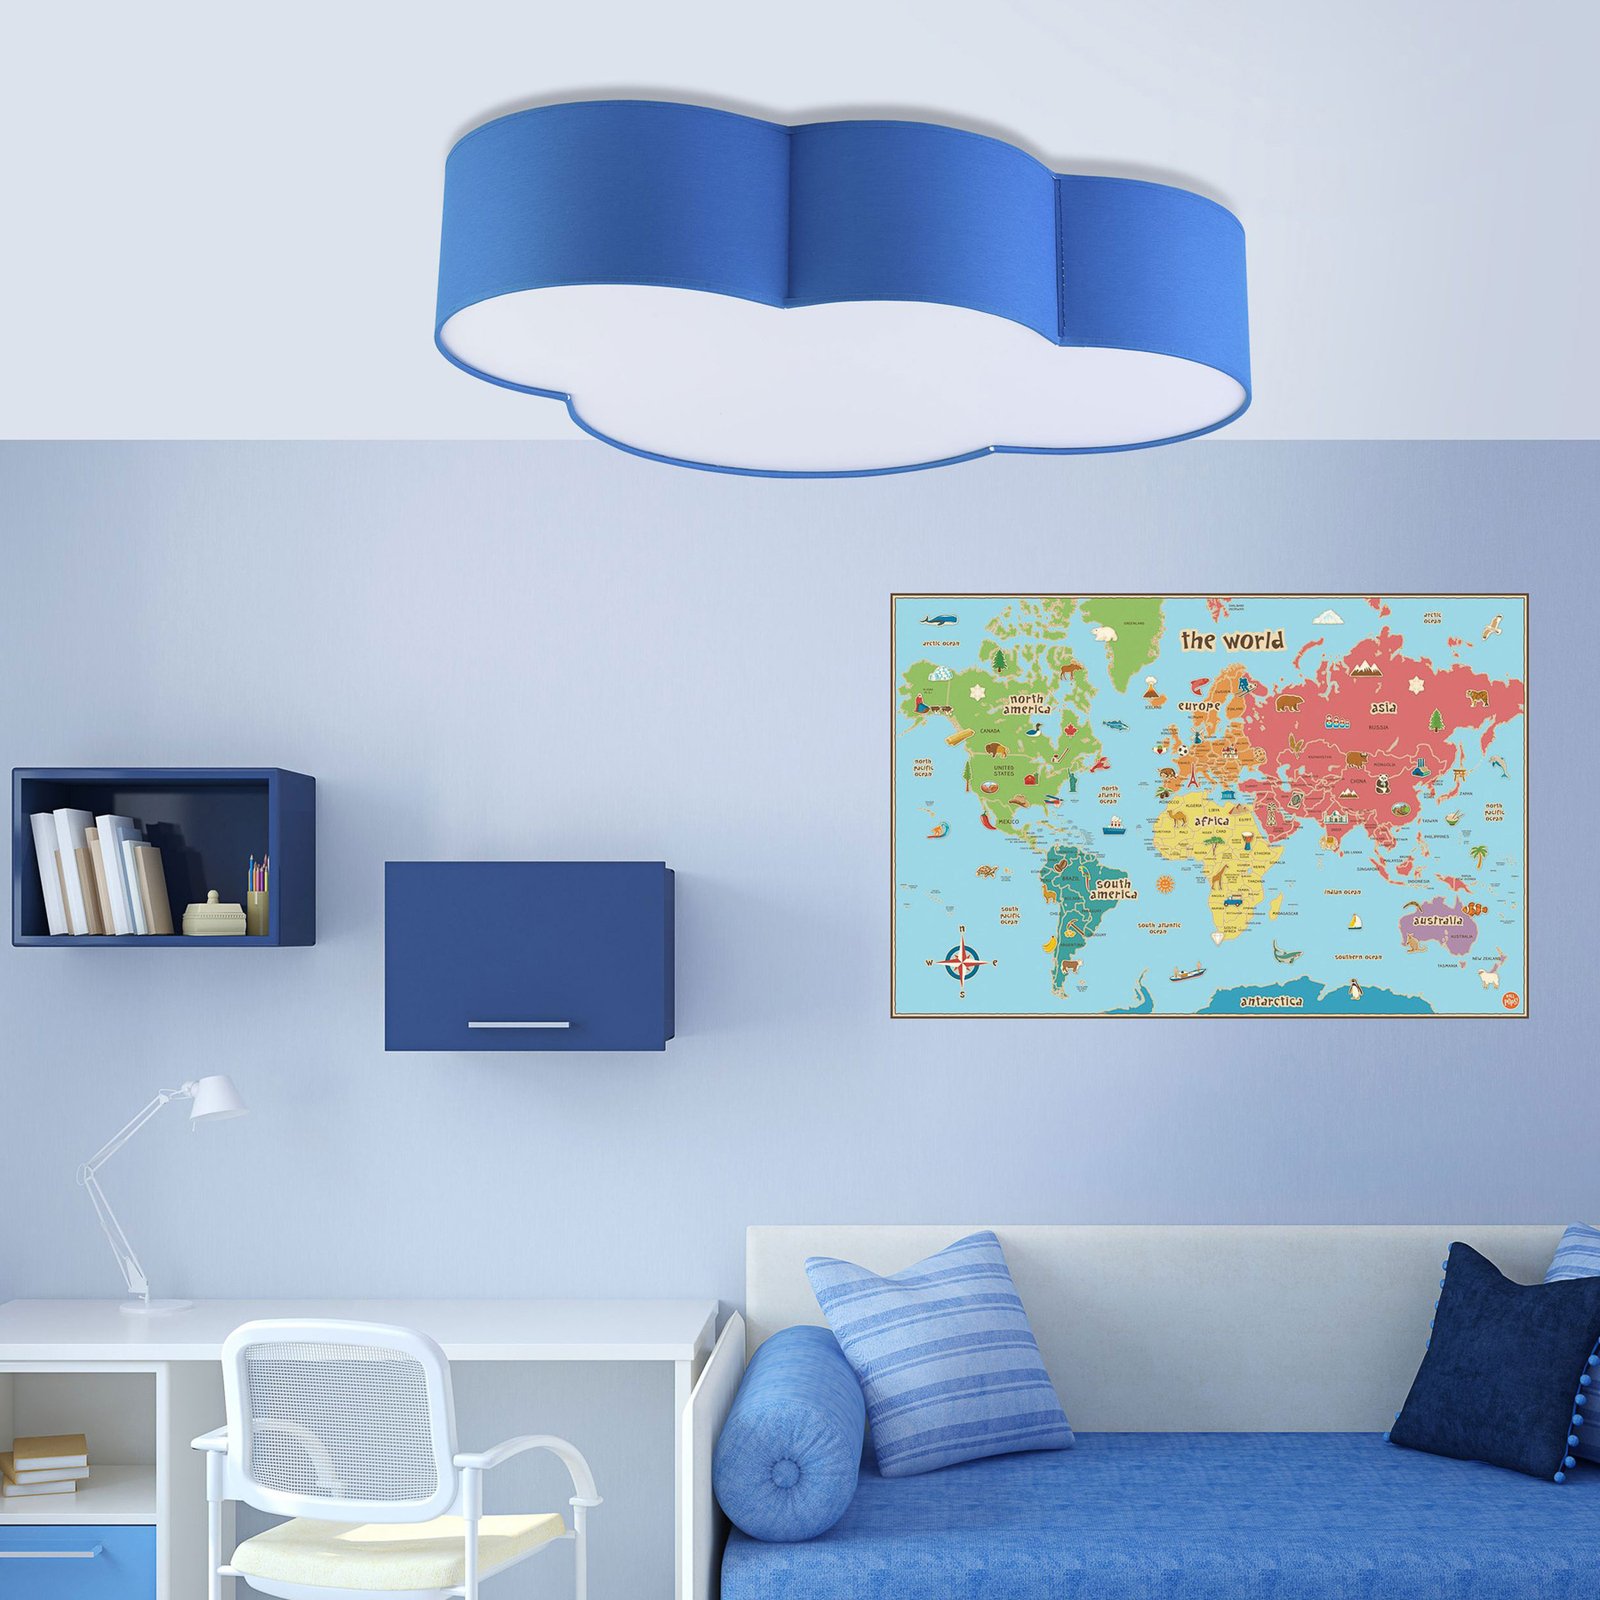 Cloud ceiling light, textile, 62 x 45 cm, blue